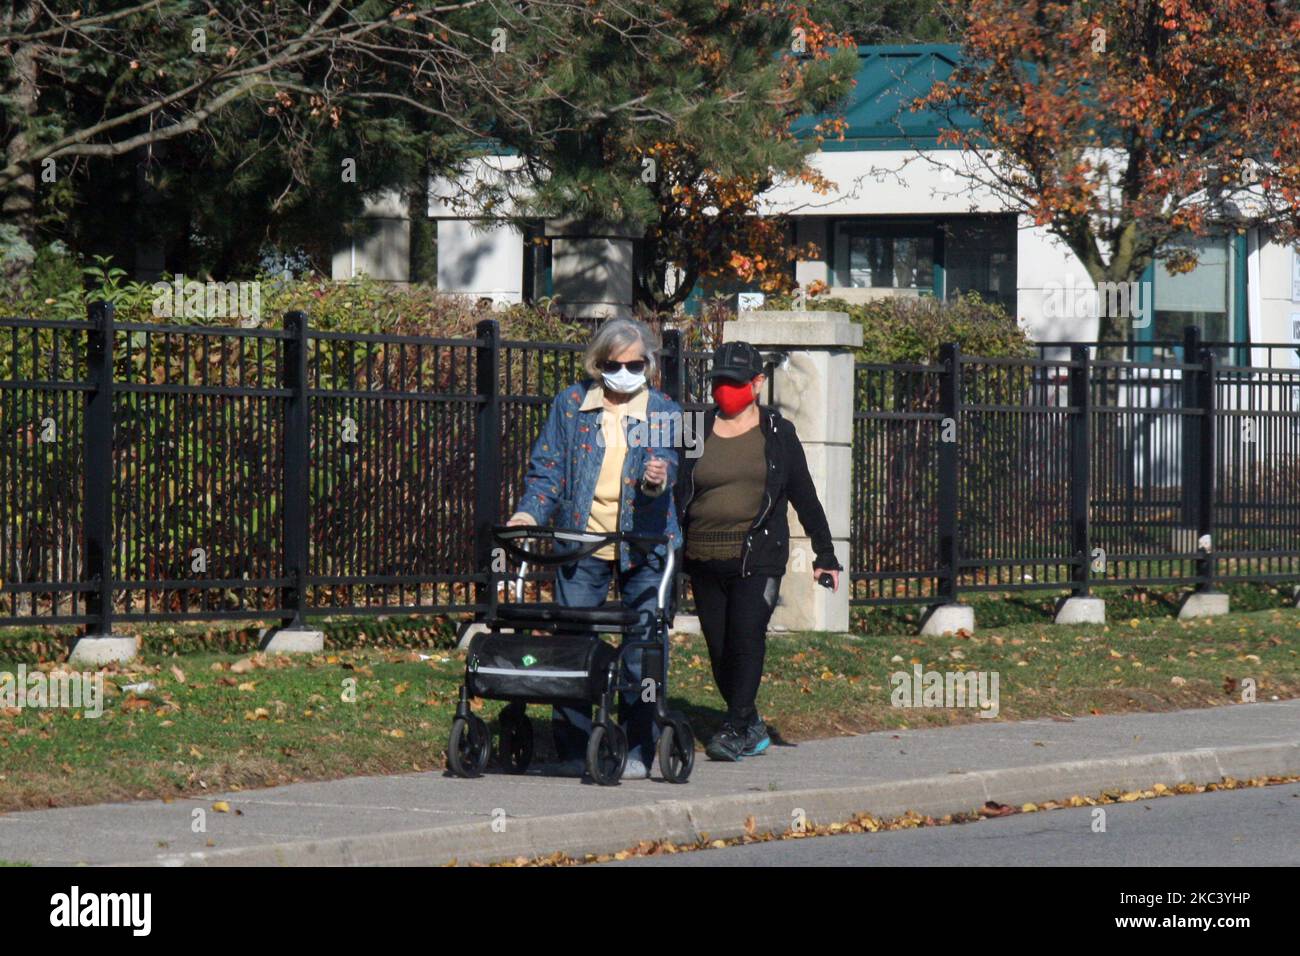 Le persone che indossano maschere facciali mentre camminano lungo la strada durante la pandemia del nuovo coronavirus (COVID-19) a Toronto, Ontario, Canada il 12 novembre 2020. L'Ontario ha riportato oggi 1.575 nuovi casi di COVID-19 e 18 decessi in più, stabilendo un nuovo record giornaliero per i casi giornalieri riportati in un periodo di 24 ore dall'inizio della pandemia. Nuove proiezioni di modellazione avvertono che l'Ontario potrebbe vedere 6.500 casi giornalieri di COVID-19 entro la metà di dicembre. Le proiezioni suggeriscono anche che il numero di pazienti COVID-19 nelle unità di terapia intensiva supererà la soglia di 150 entro due settimane, travolgendo alcuni ospedali A. Foto Stock